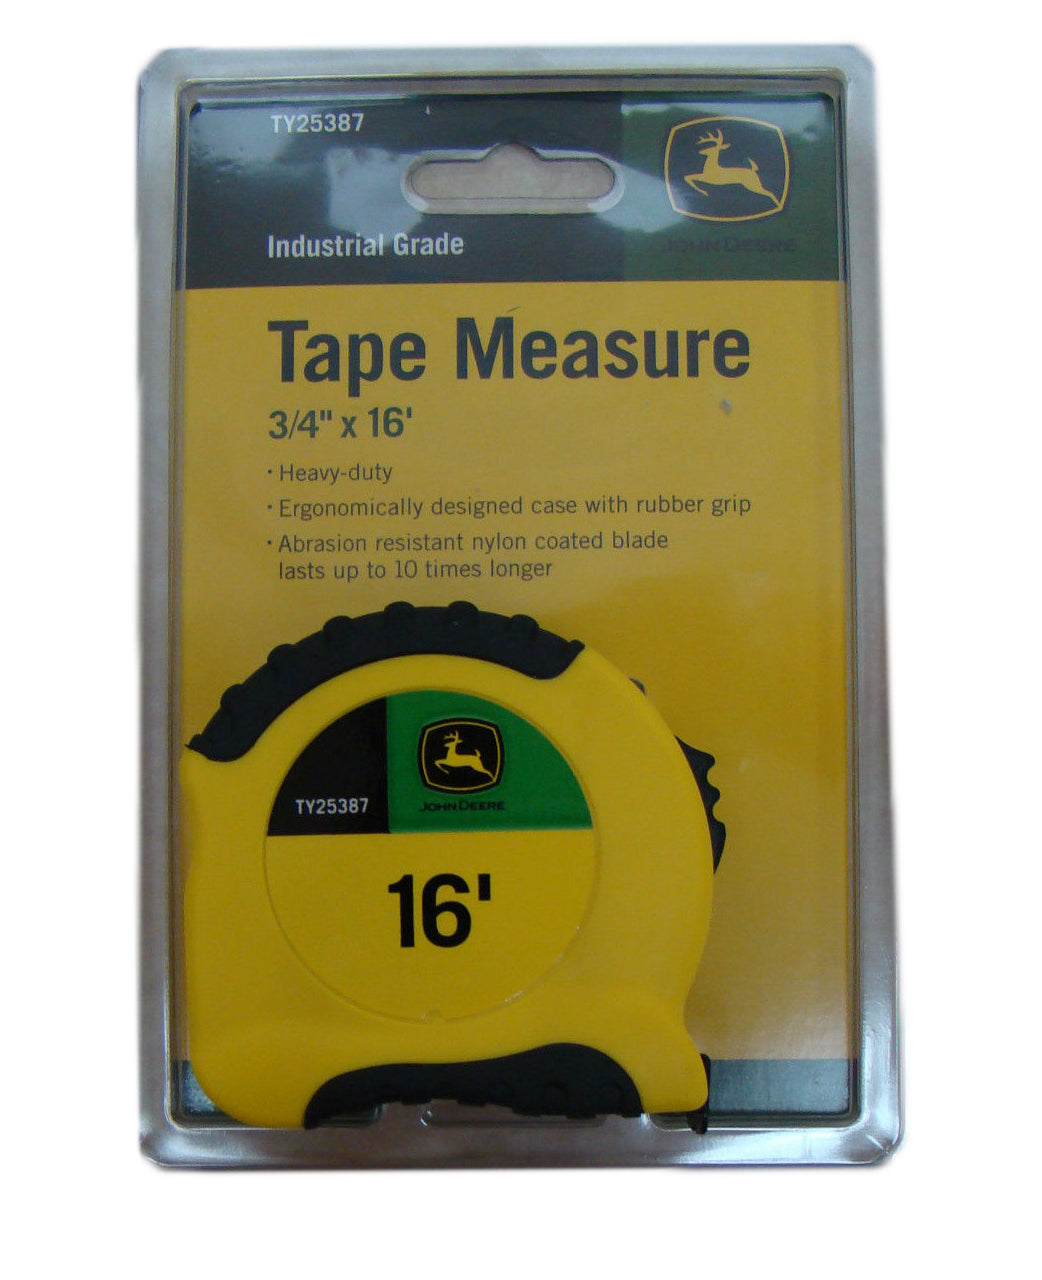 John Deere Pro-Series 3/4-Inch x 16-Foot Tape Measure - TY25387